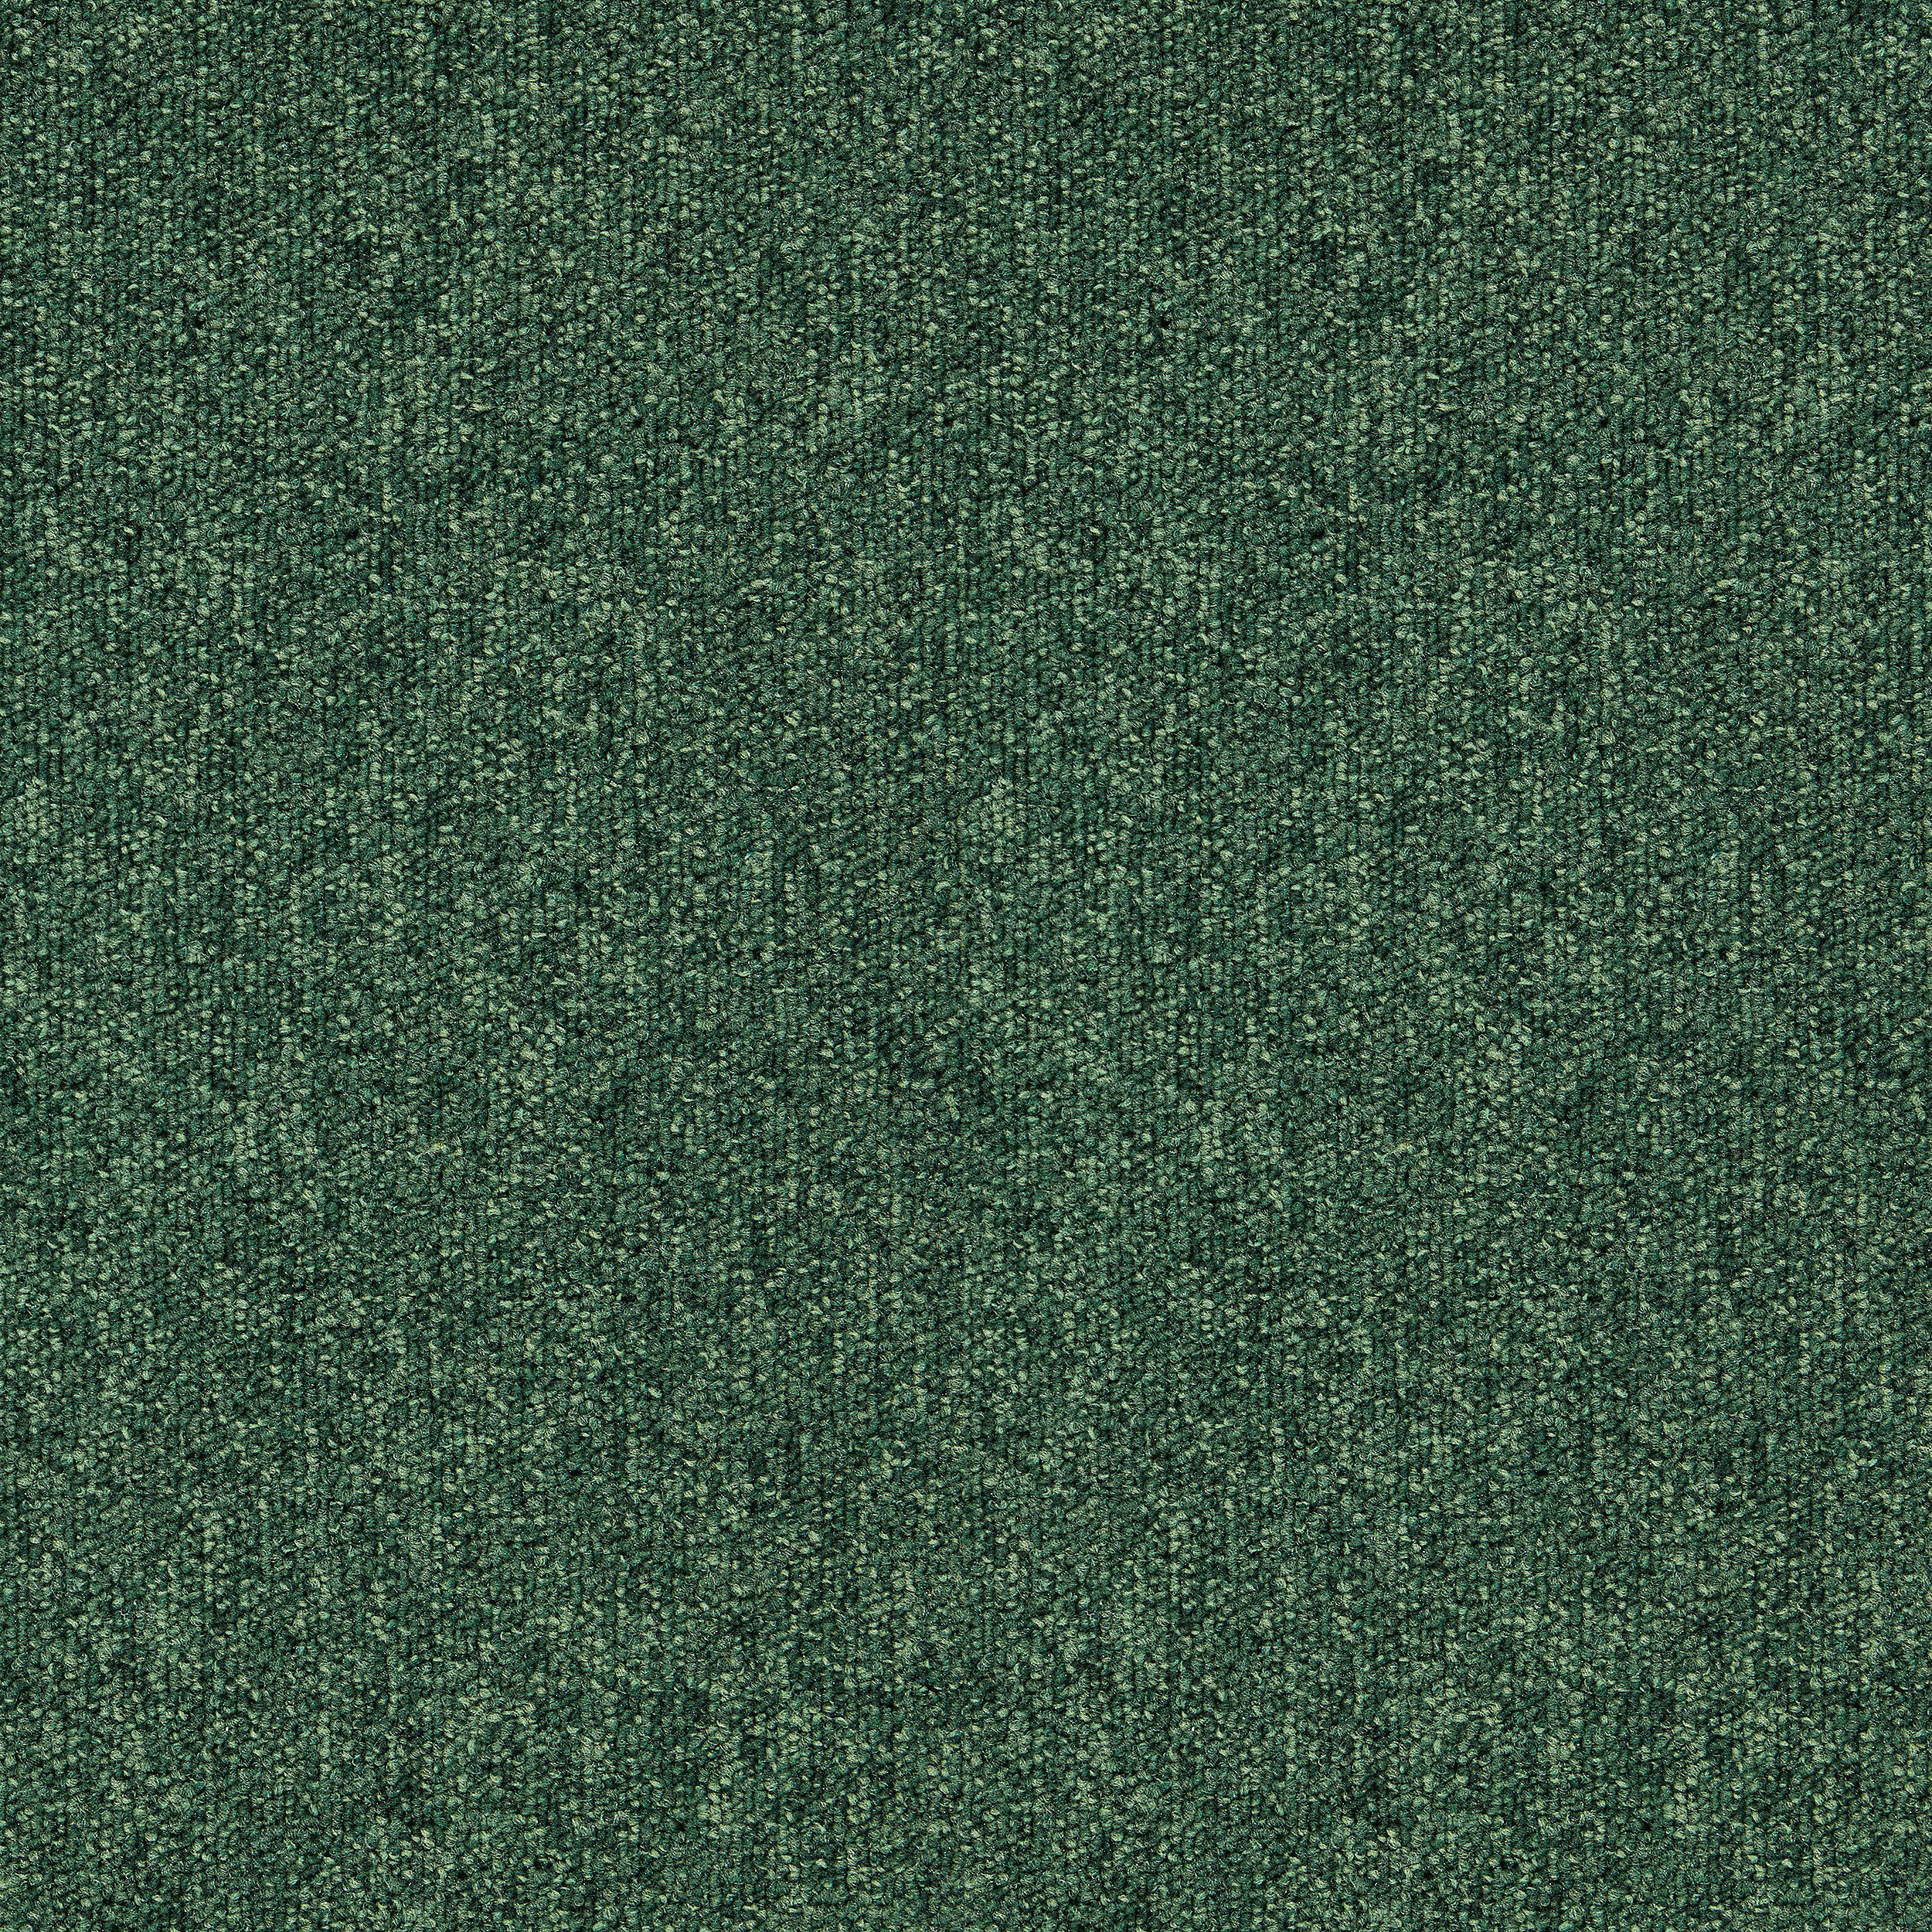 Heuga 727 Carpet Tile In Bottle Green afbeeldingnummer 17